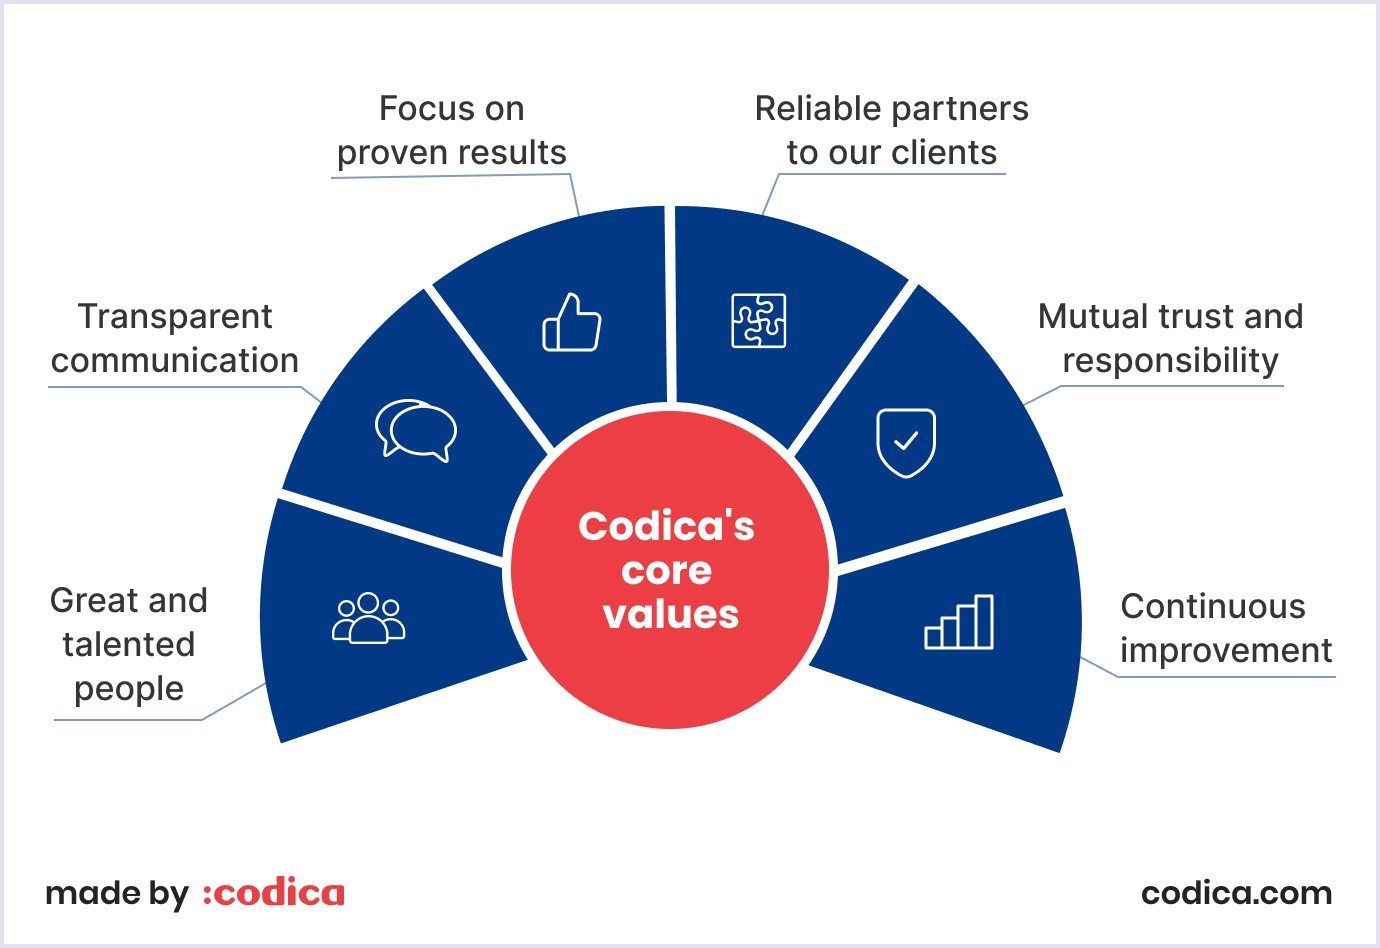 Codica's core values